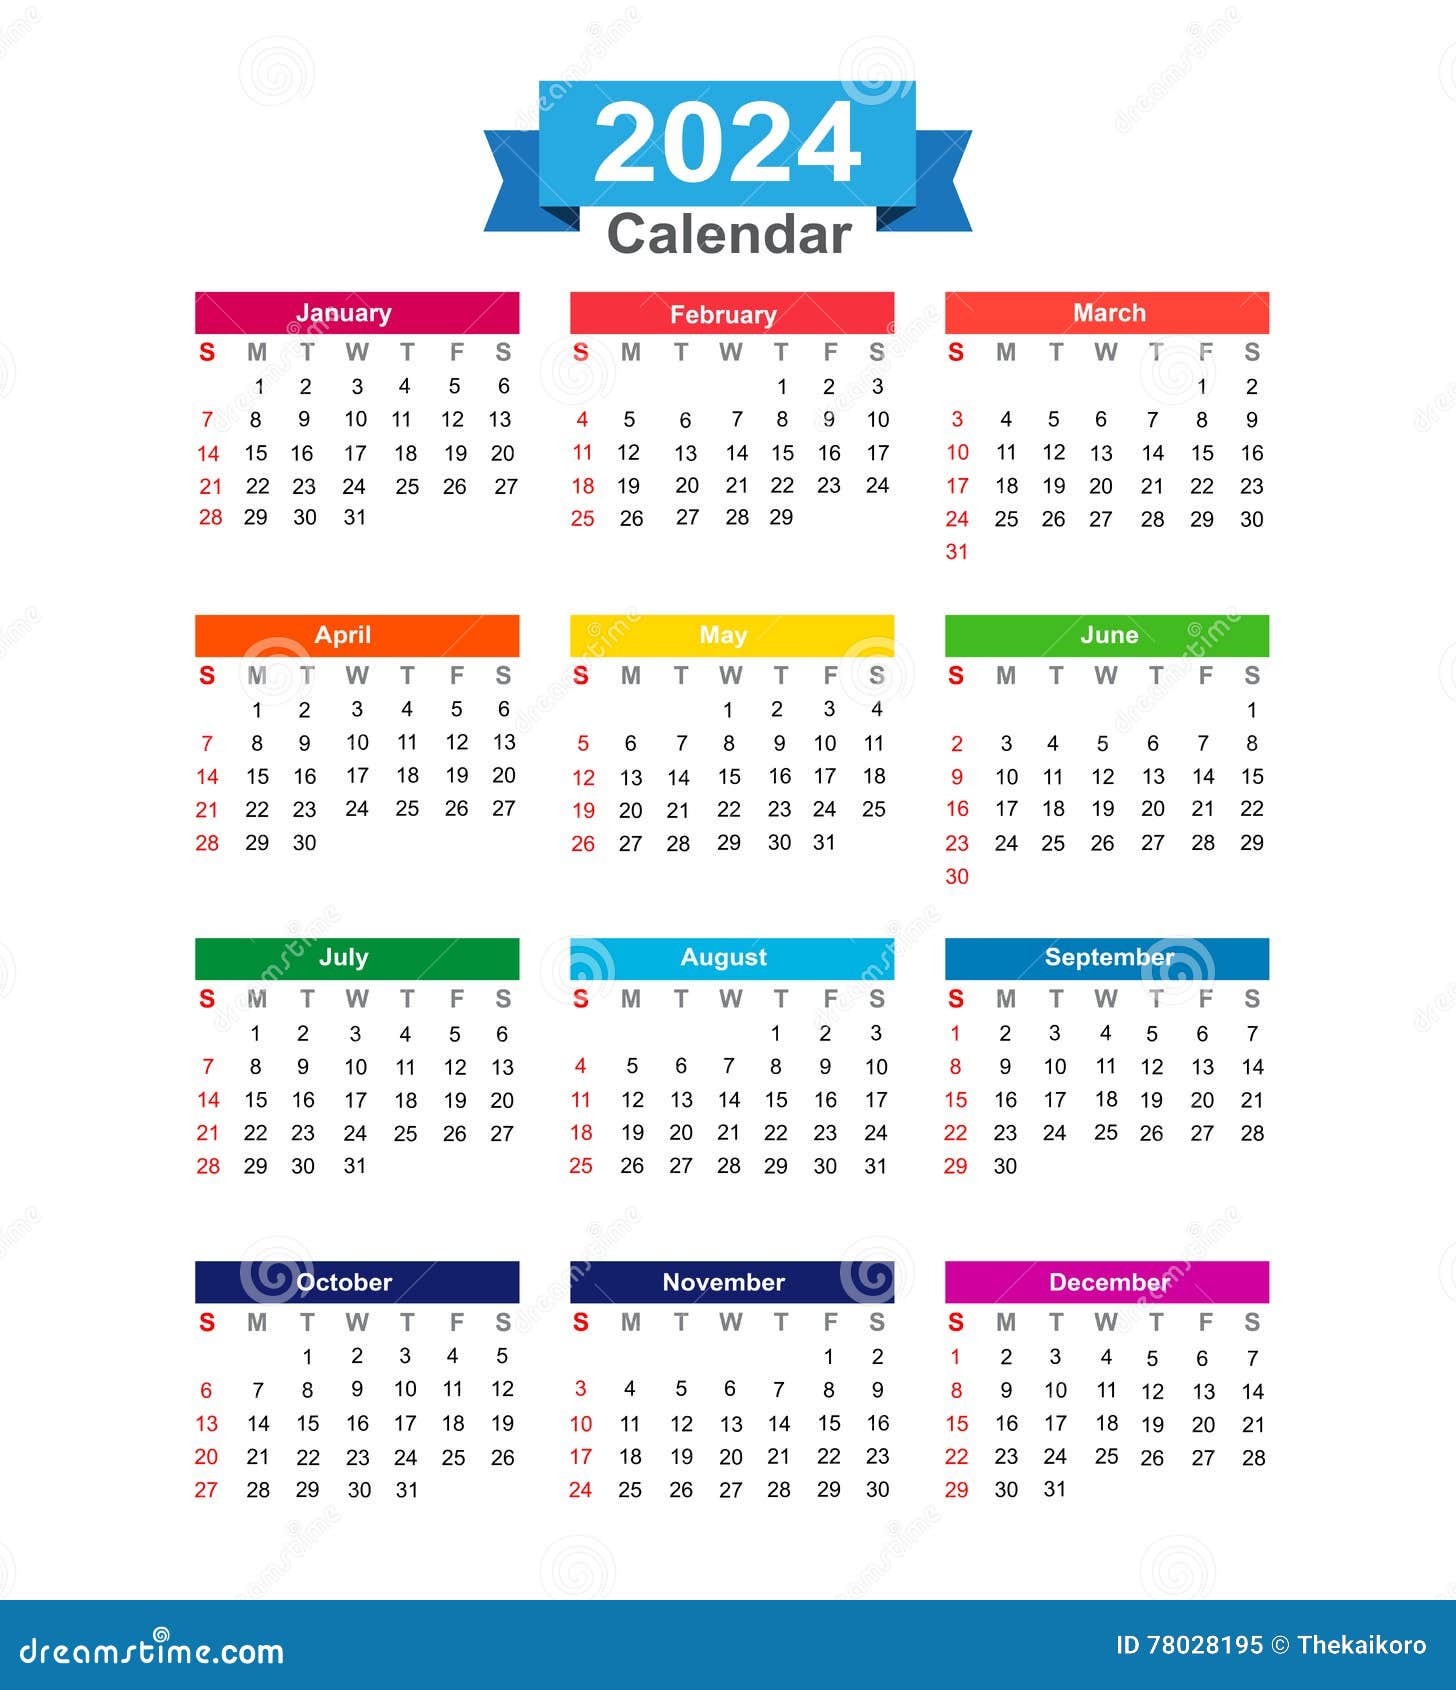 Calendario 2024 Gratis Calendar 2024 Ireland Printable